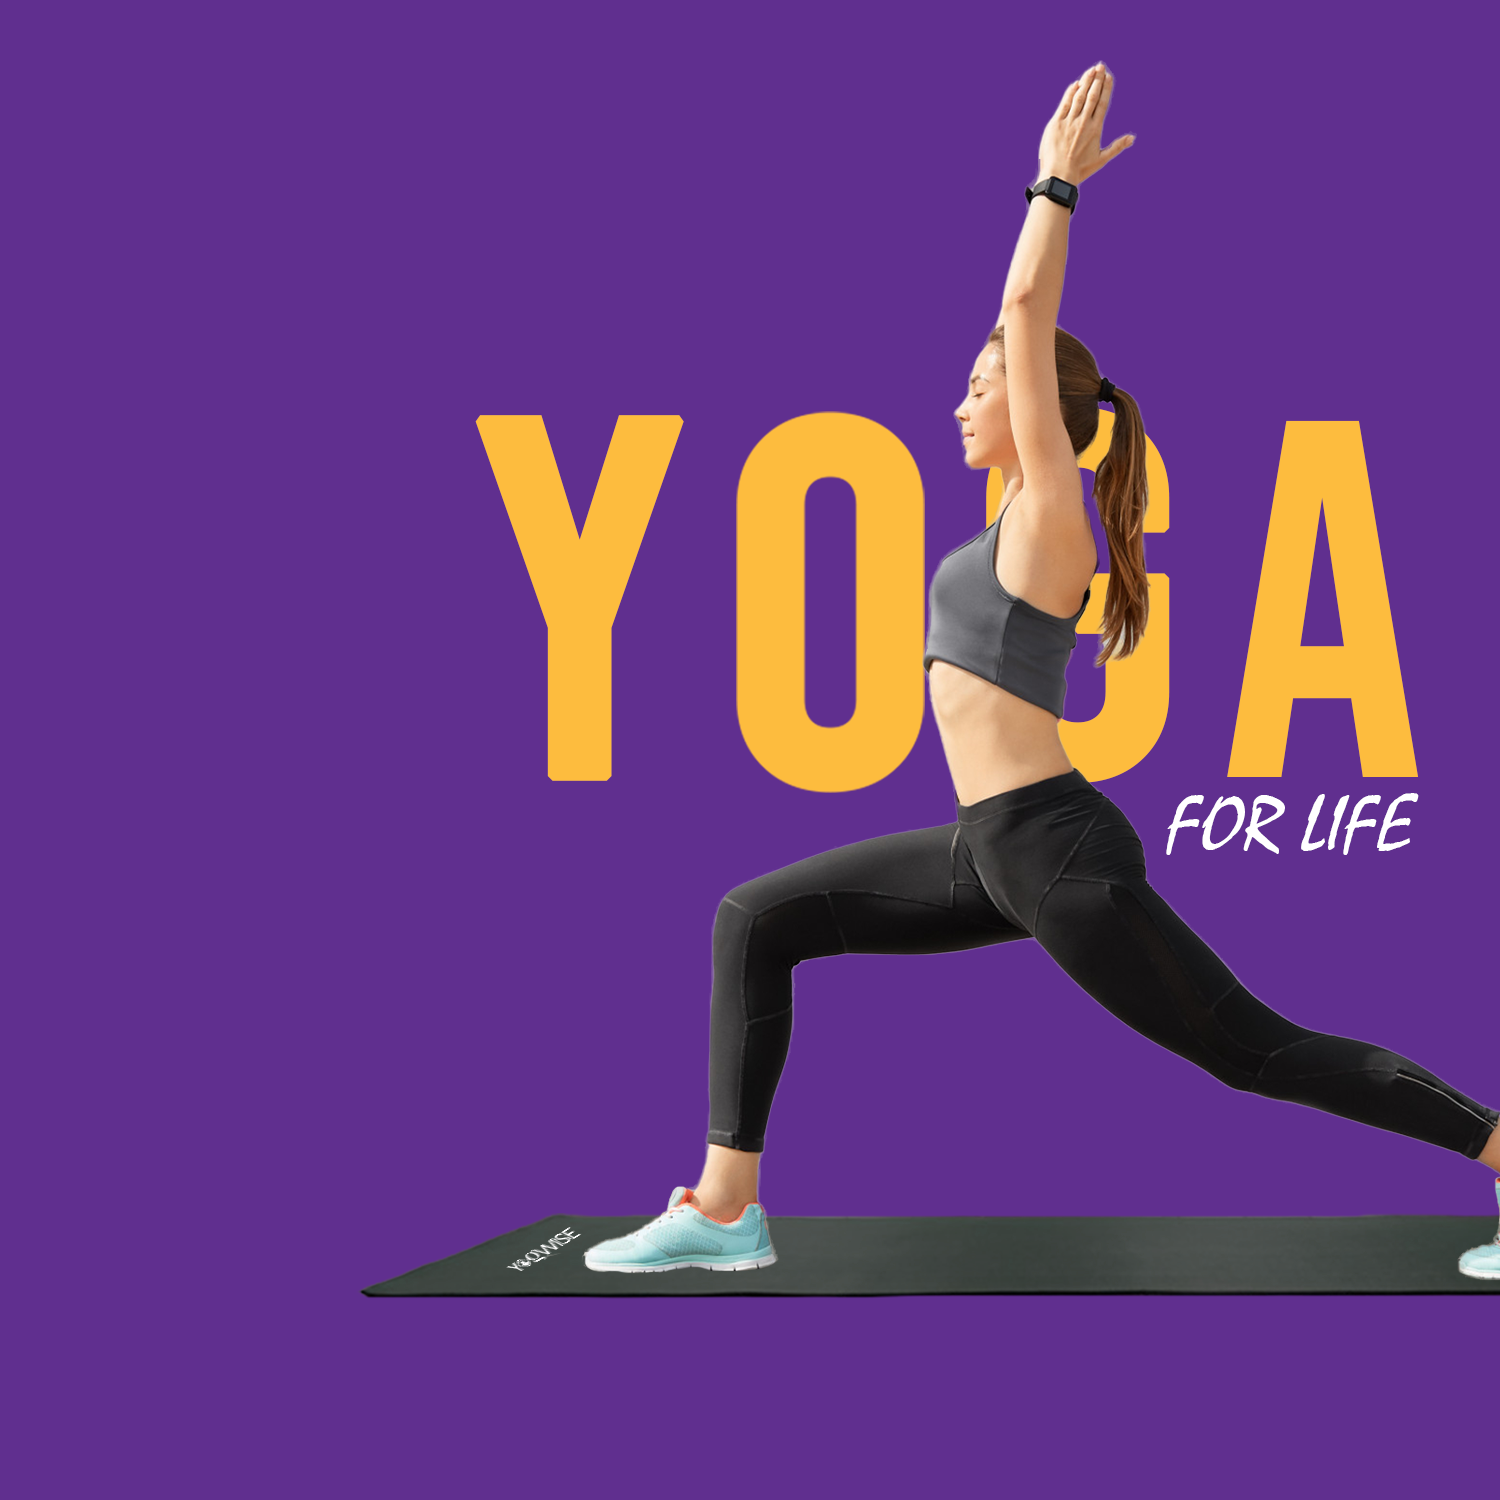 Improve Your Practice with Superior Quality Premium Yoga Mats. - Yogwise -  Medium